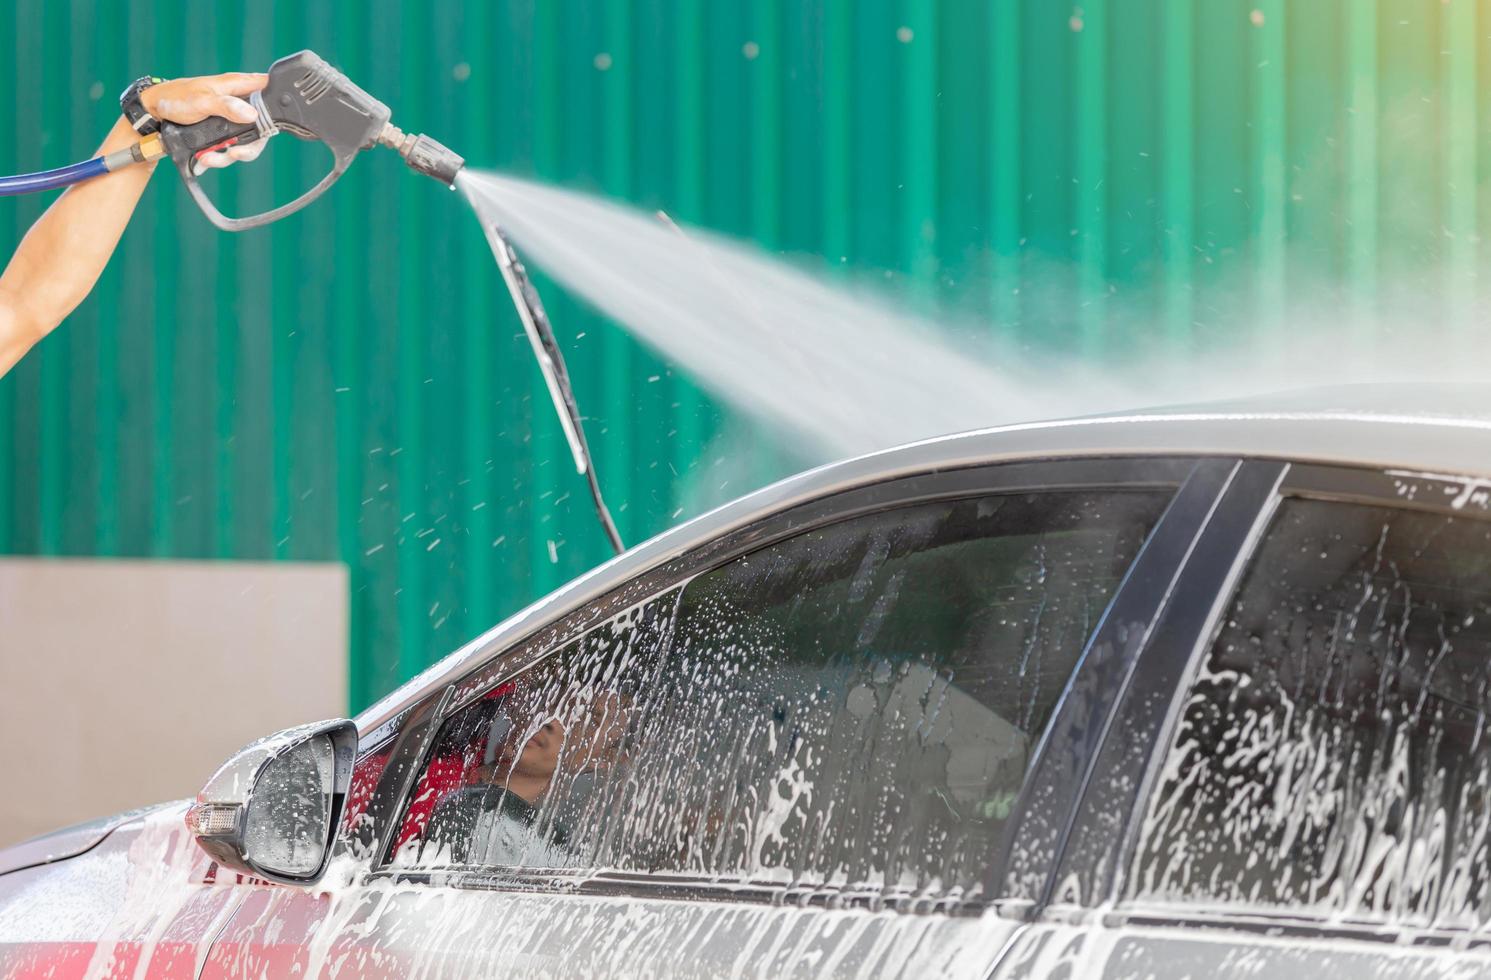 limpeza de lavagem de carro com sabão e lavagem com água de alta pressão, conceito de manutenção. foto